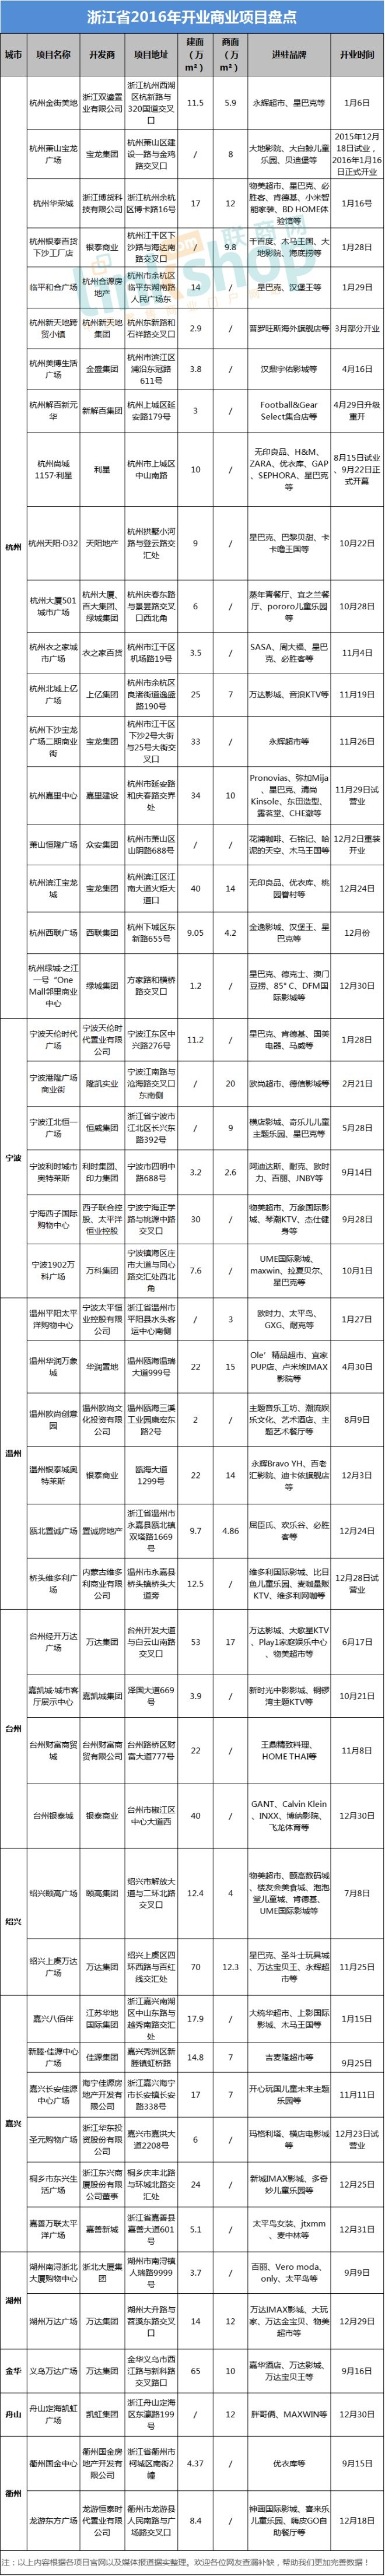 2016年浙江全省开业商业项目盘点统计